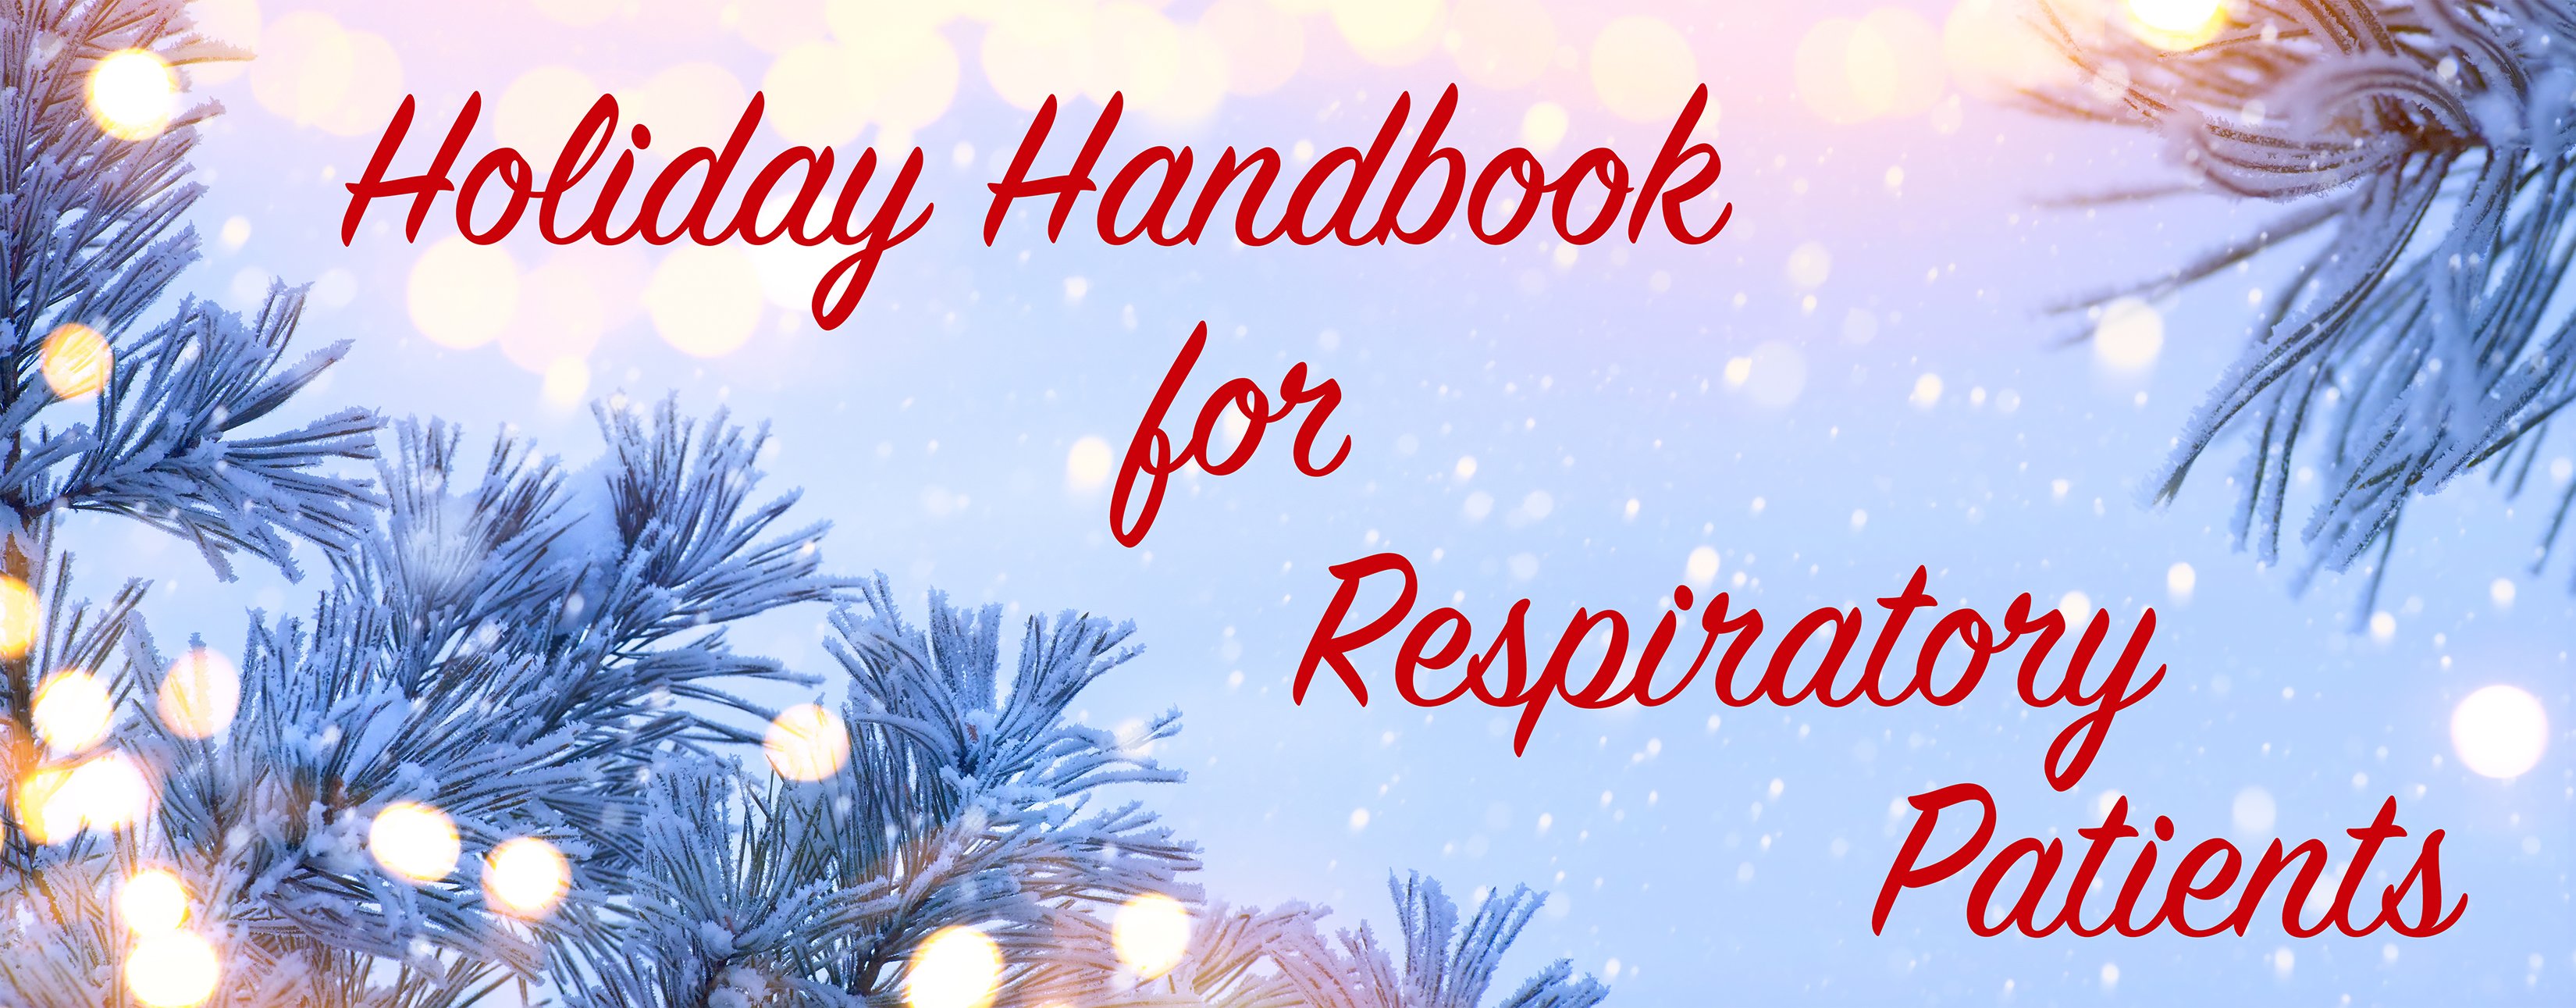 holiday handbook